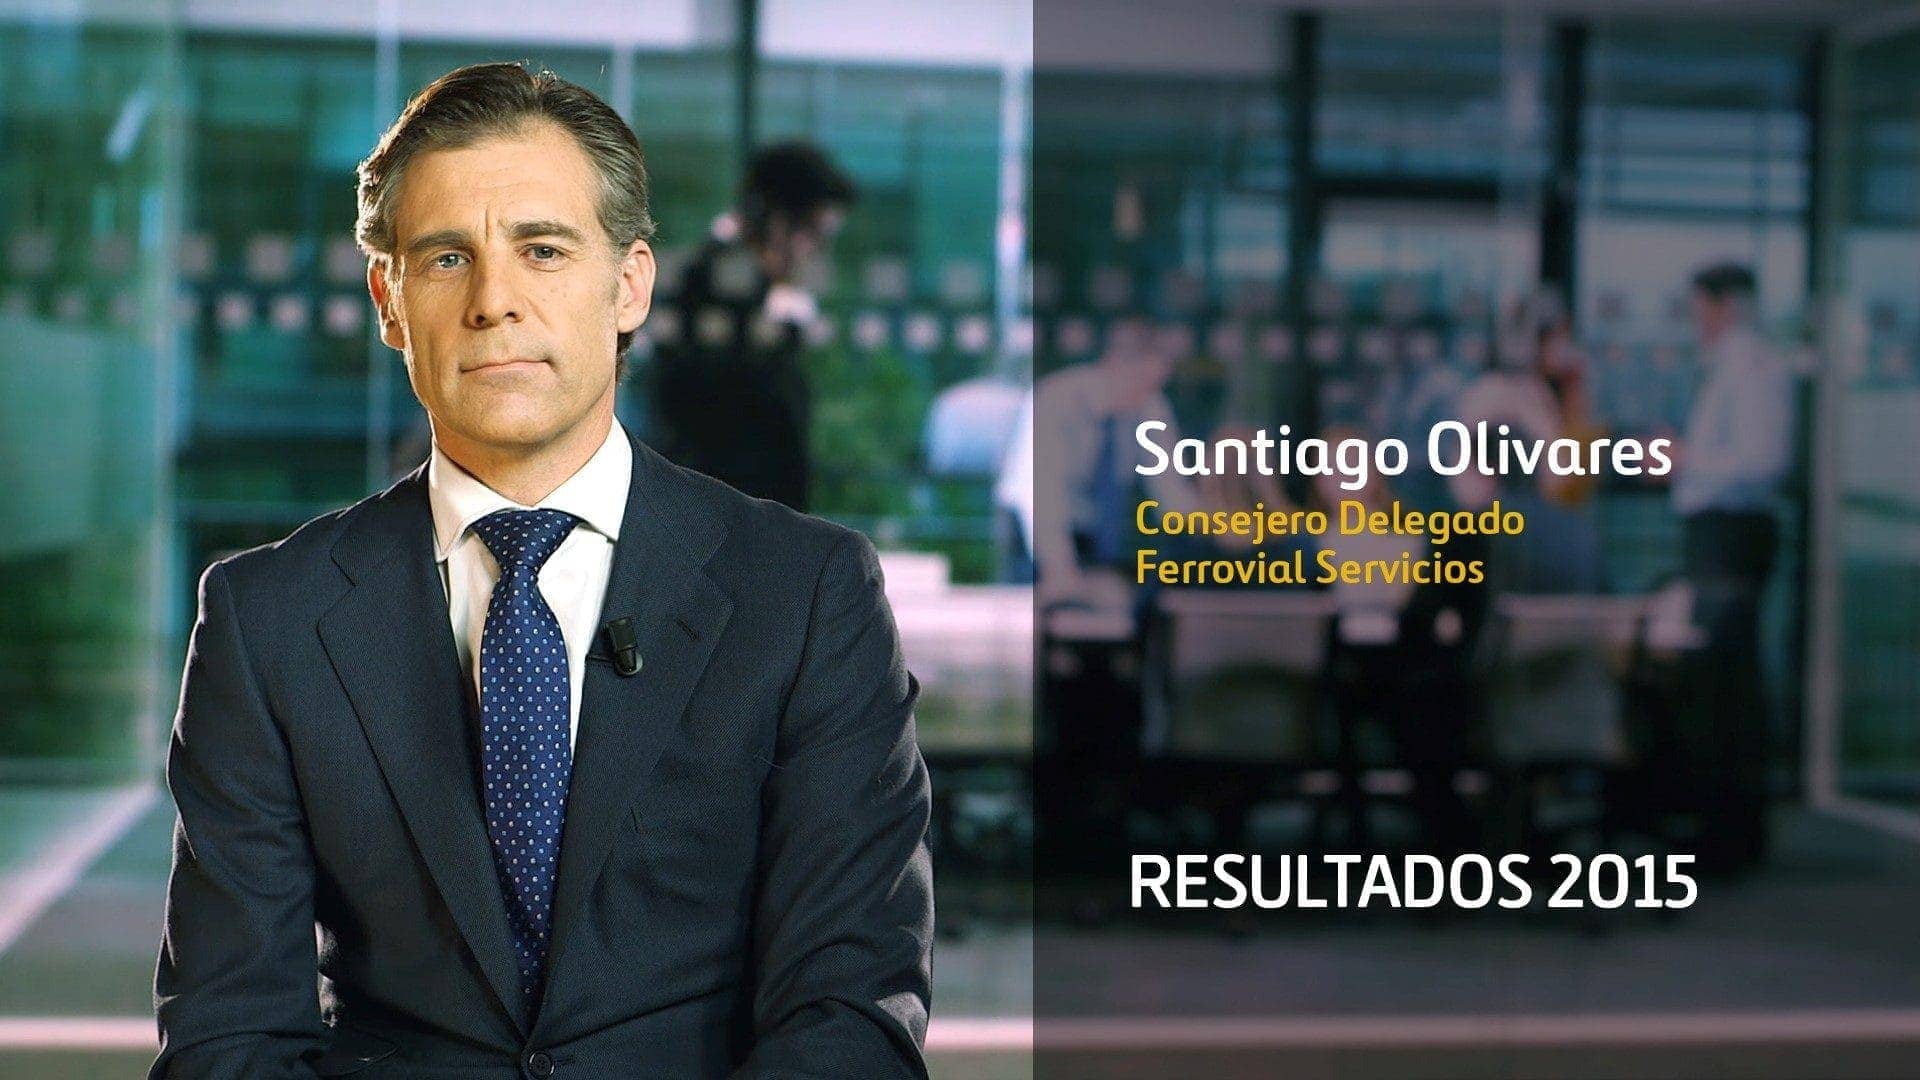 Santiago Olivares CEO Ferrovial Servicios Resultados 2015